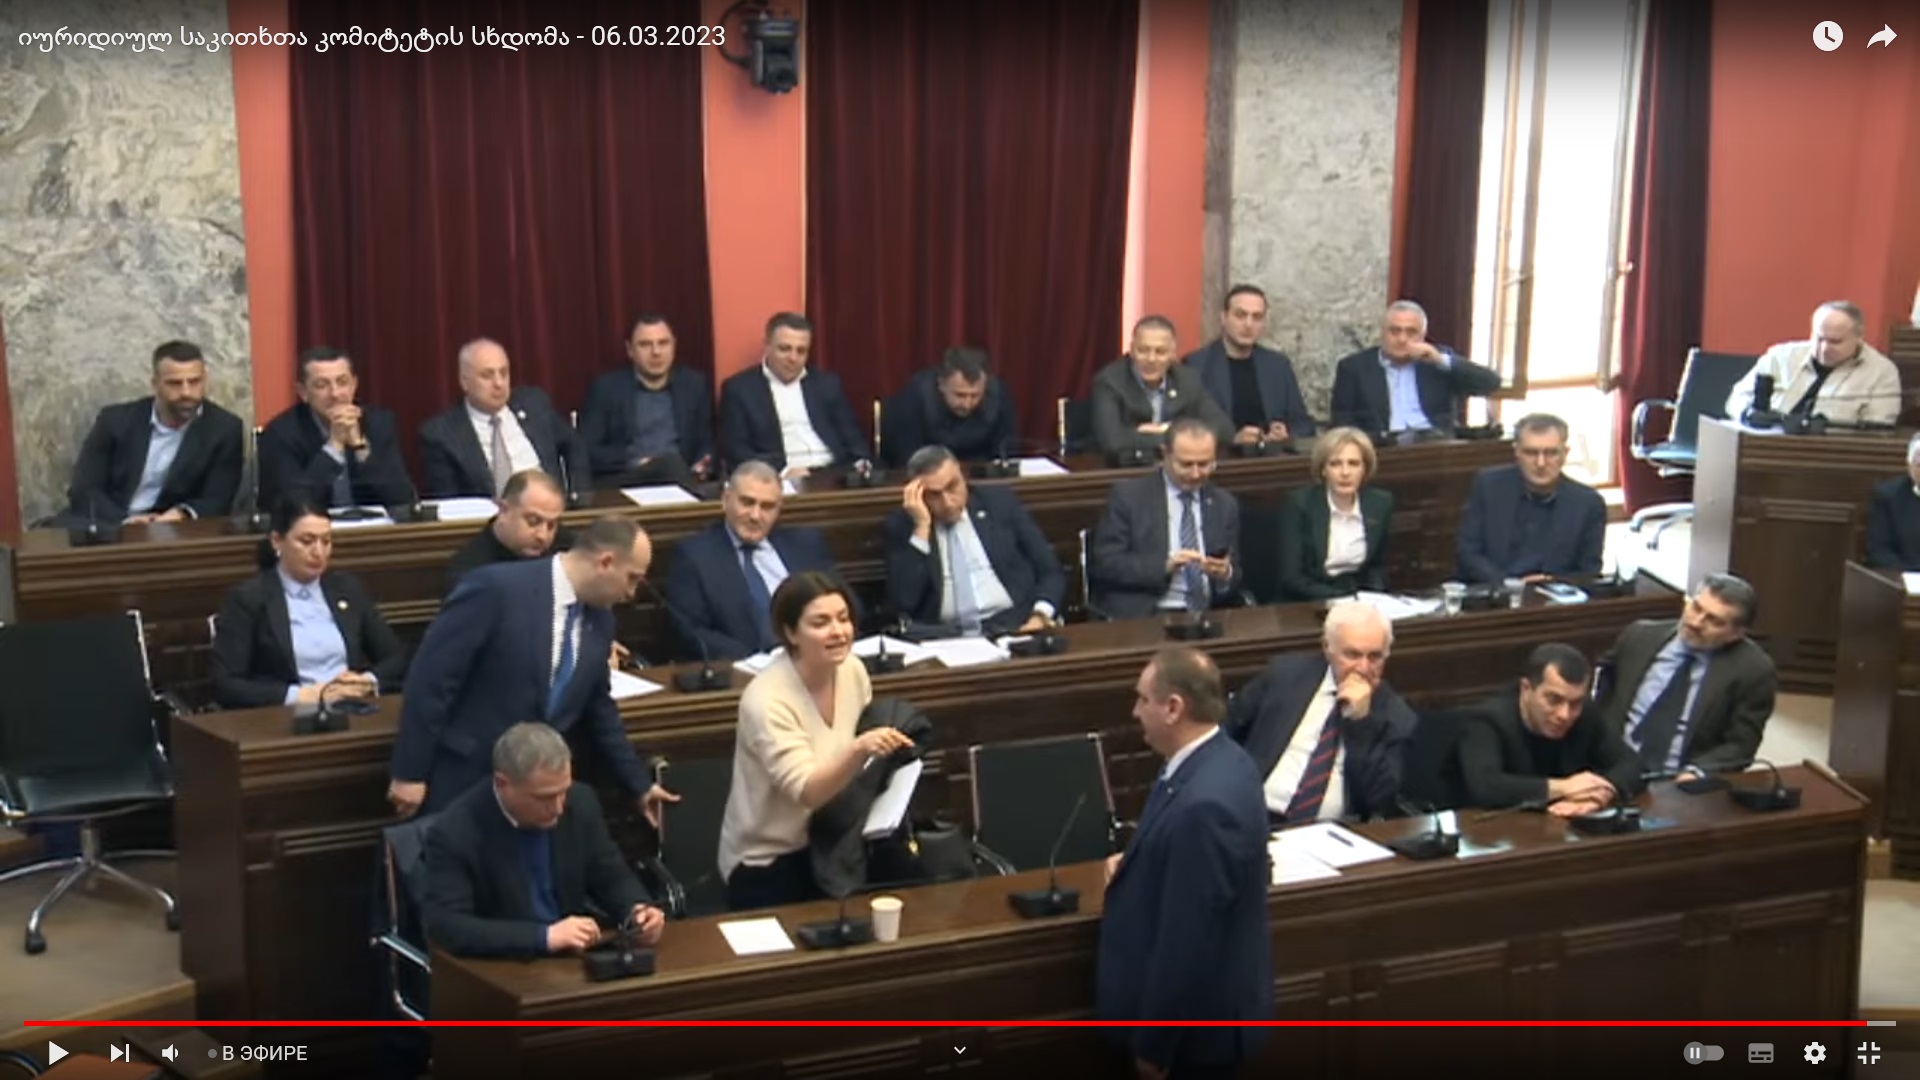 Рассмотрение законопроекта об агентах иностранного влияния в парламенте Грузии, 06.03.2023